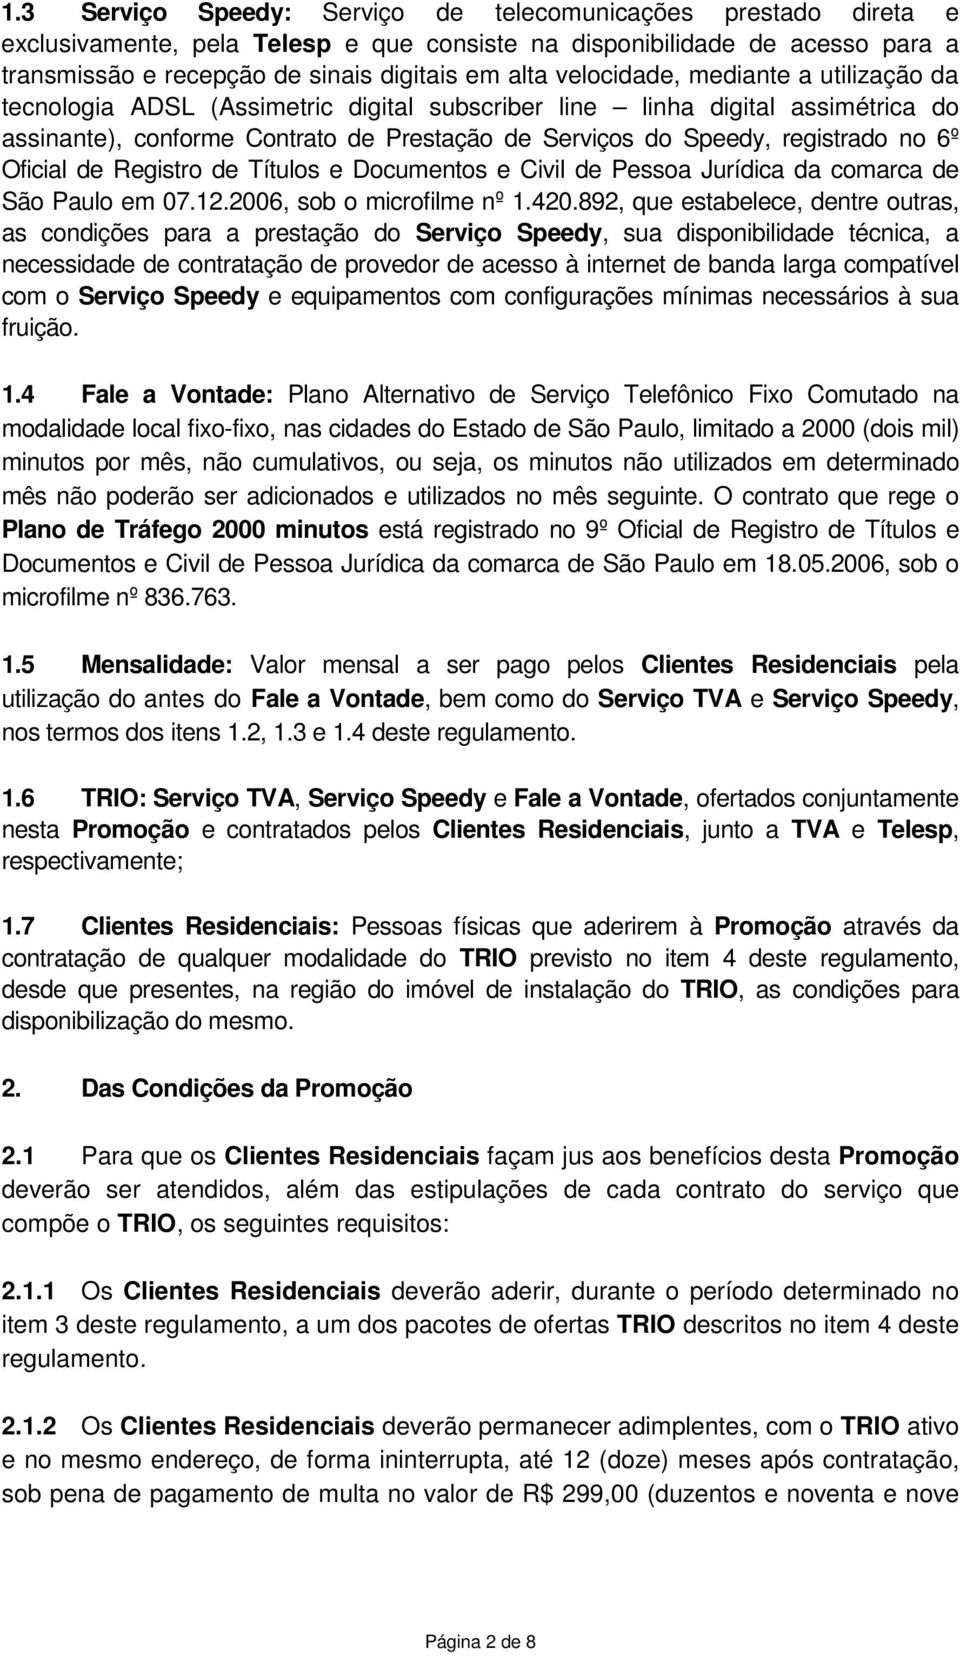 6º Oficial de Registro de Títulos e Documentos e Civil de Pessoa Jurídica da comarca de São Paulo em 07.12.2006, sob o microfilme nº 1.420.